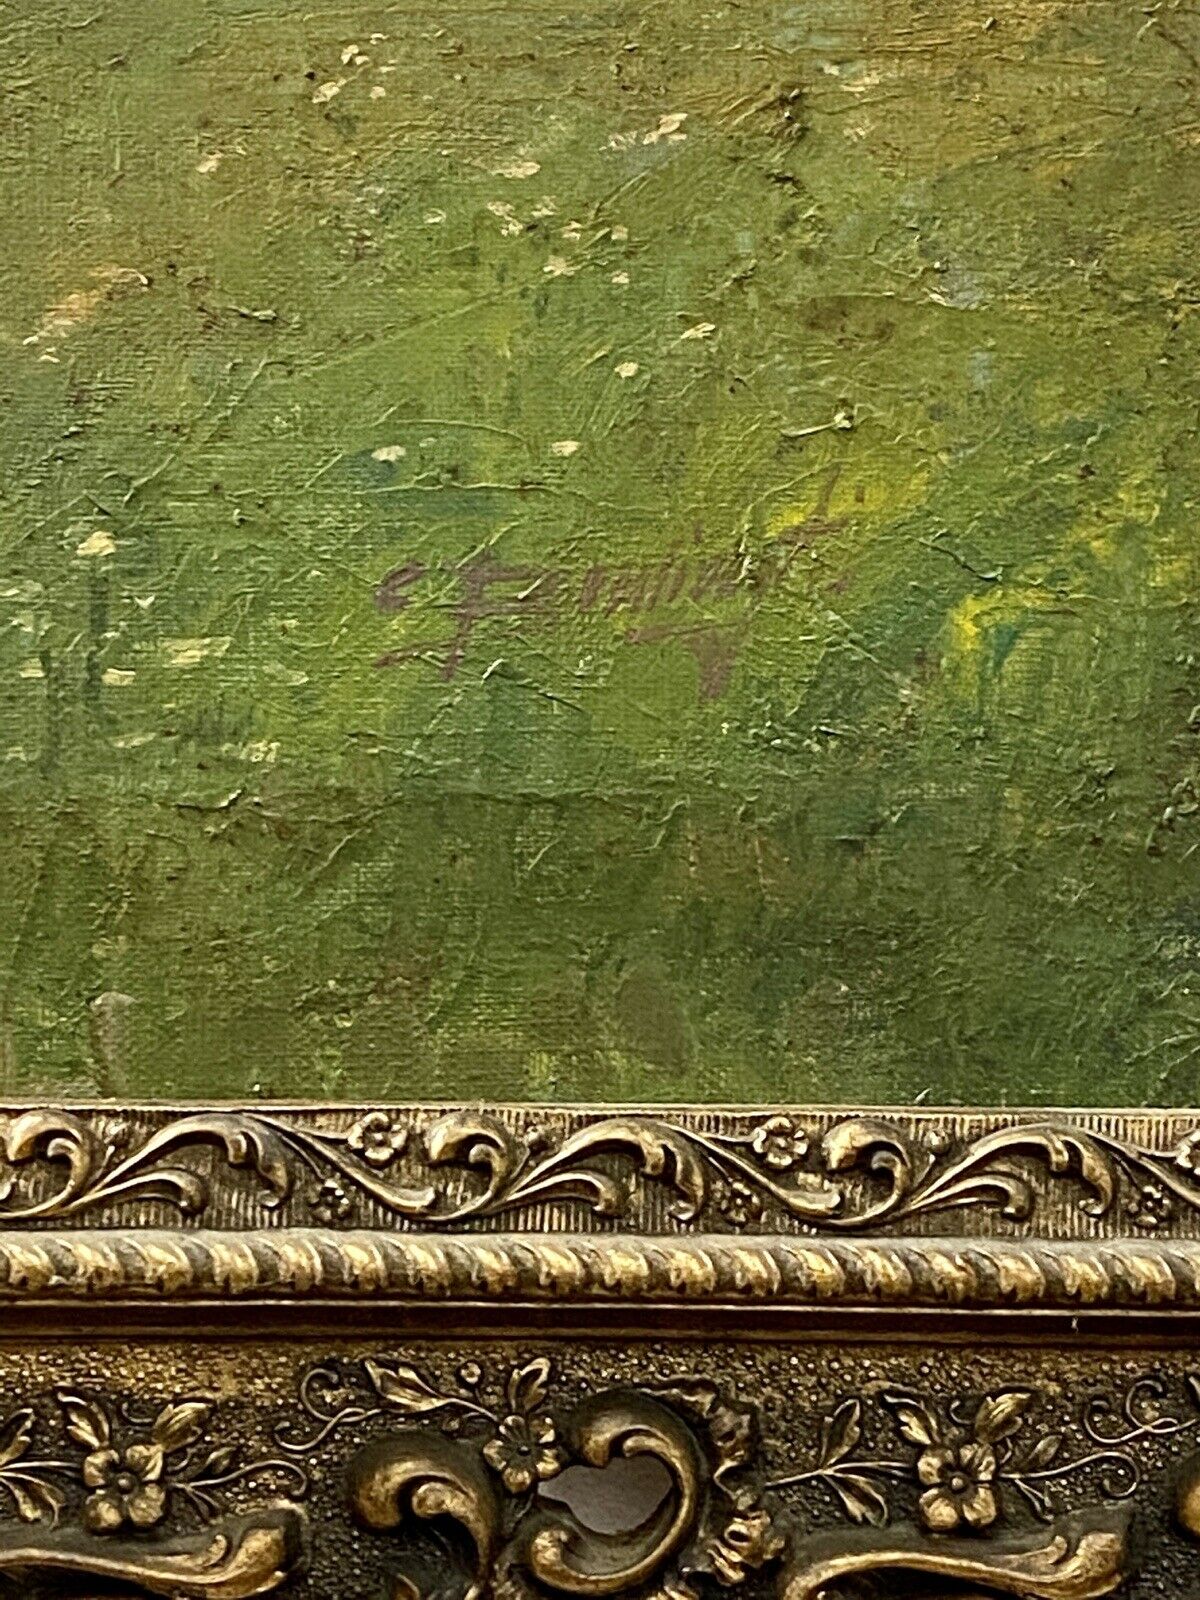 Cesare Bentivoglio – Dipinto ad olio su tela, paesaggio fluviale – Firma del pittore e dettaglio della cornice dorata